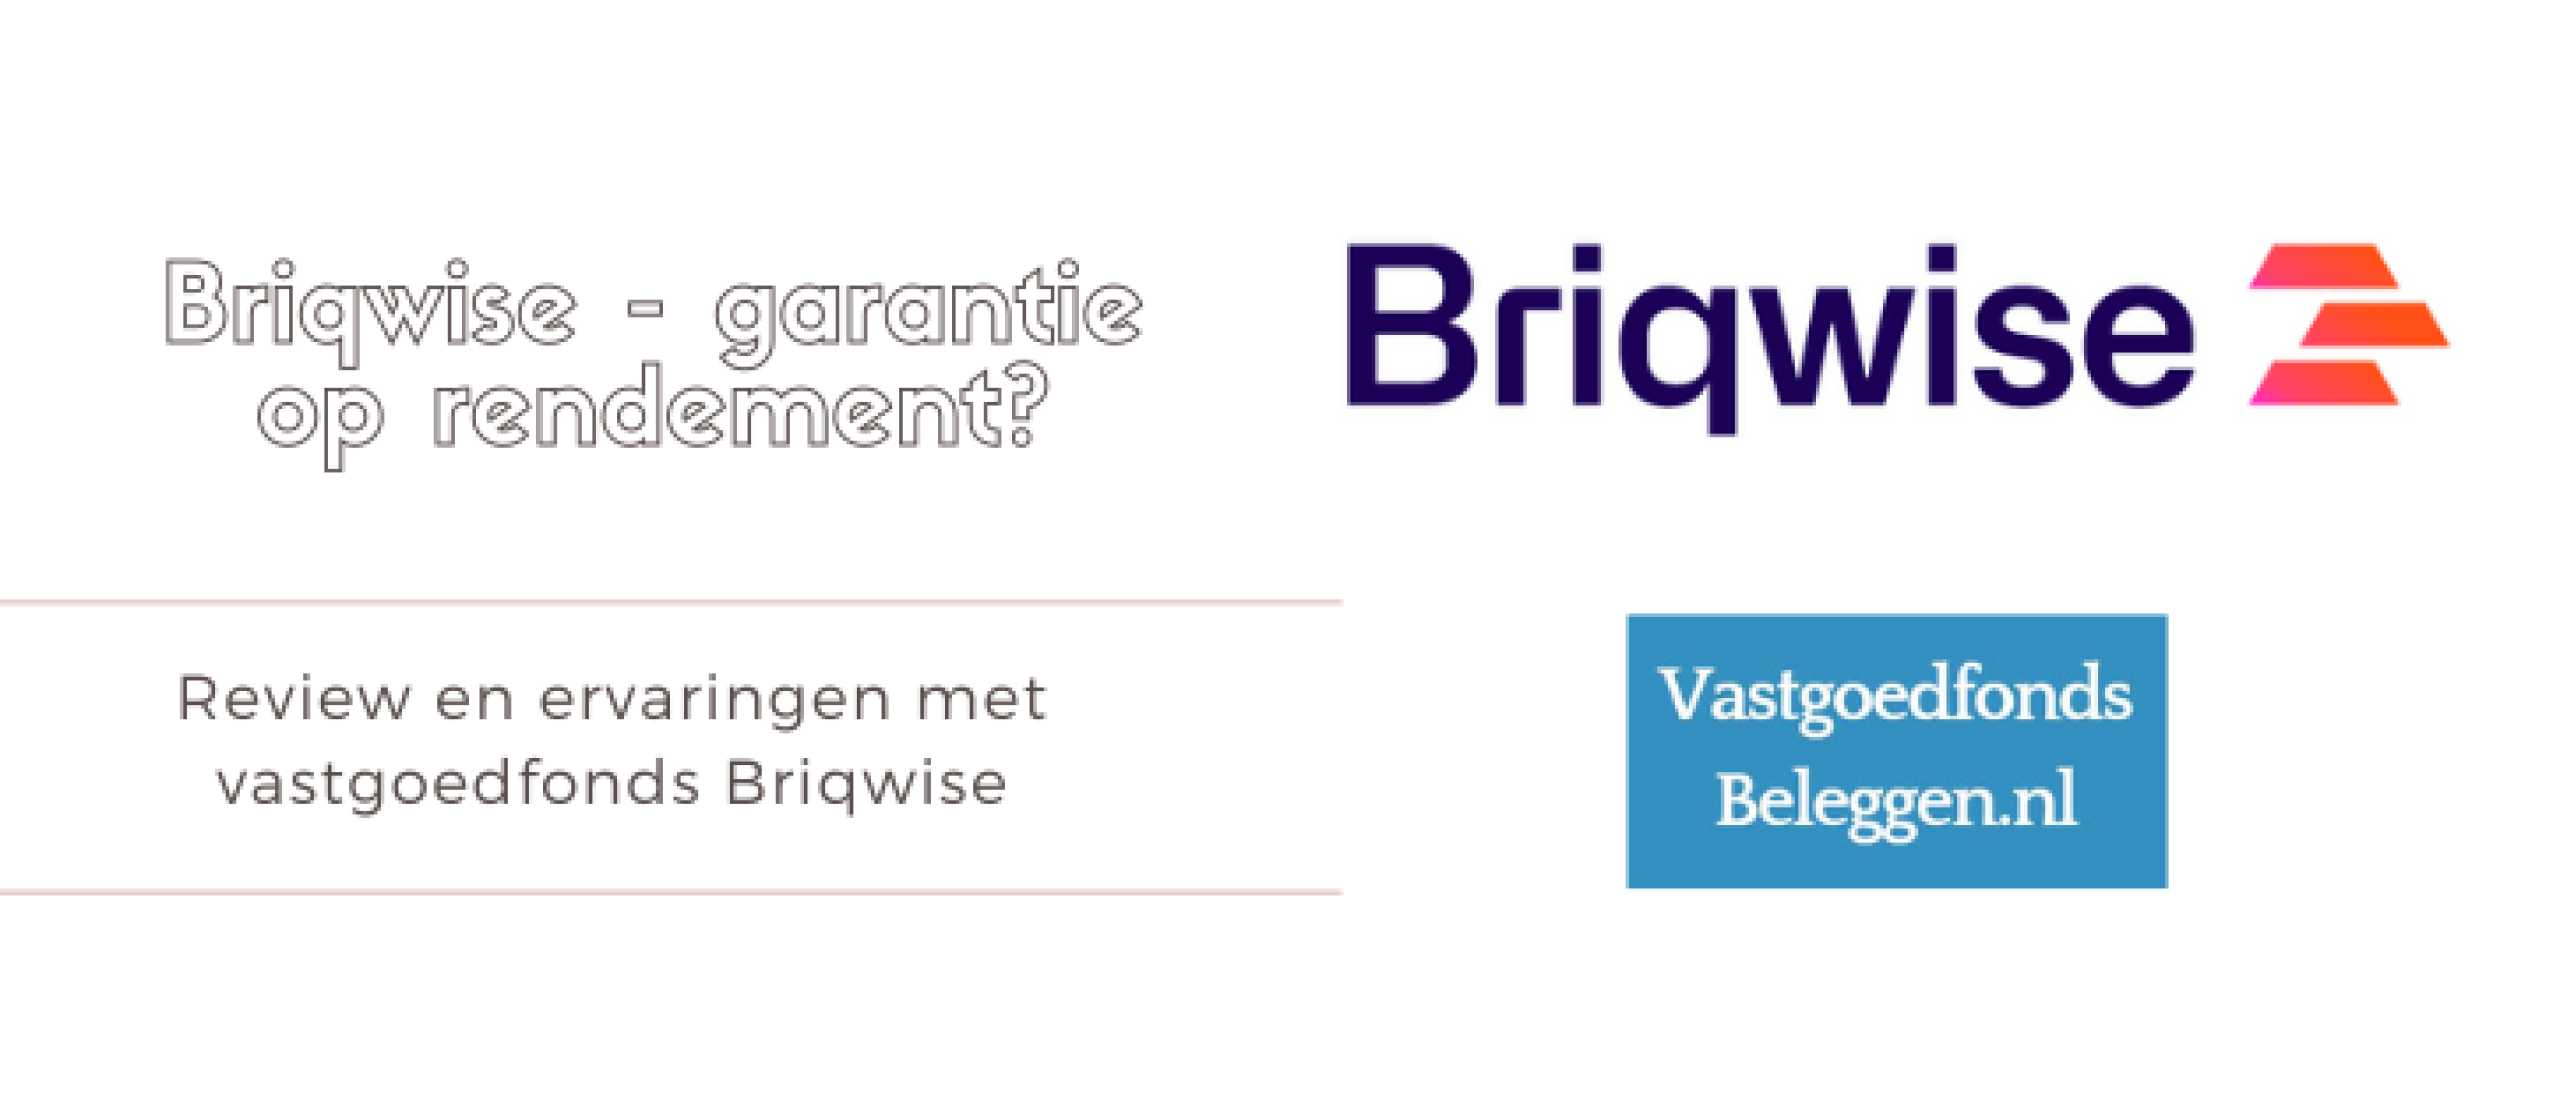 Briqwise Review en Ervaringen – 6% Garantie? | Vastgoedfonds beleggen.nl